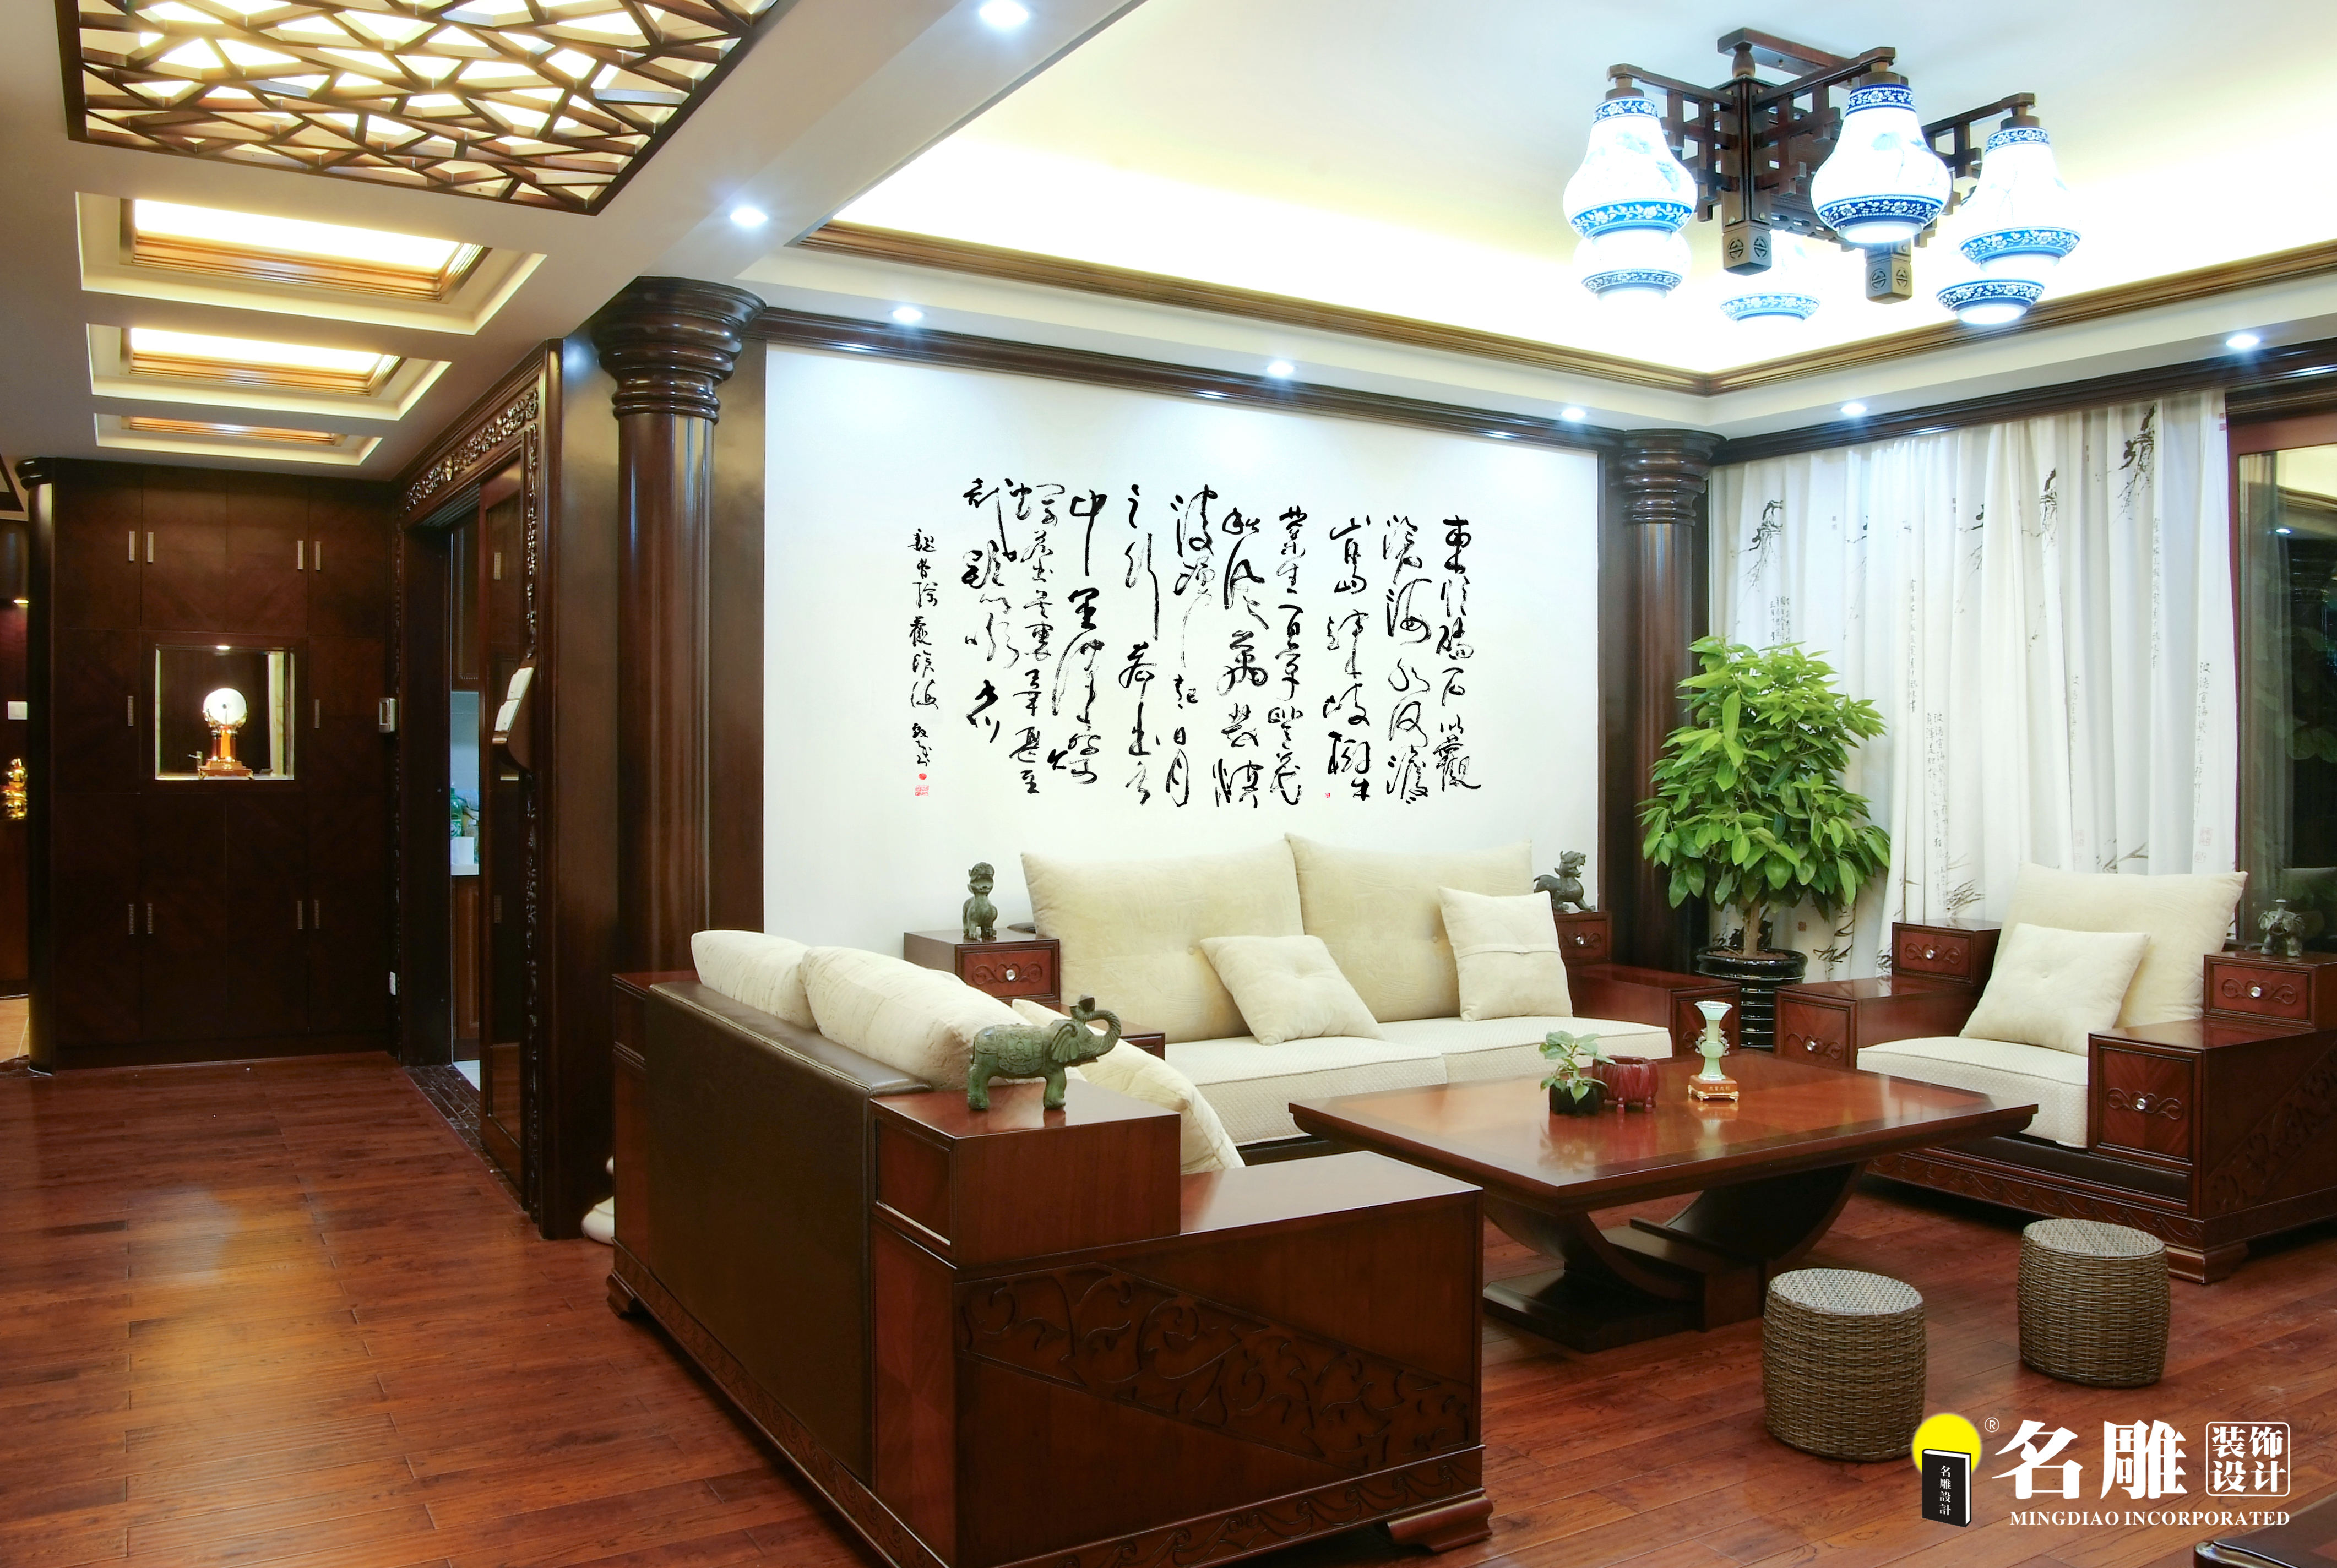 二居 中式 文艺青年 东方韵味 名雕装饰 客厅图片来自名雕装饰设计在中式风格-135平二居室雅居装修的分享